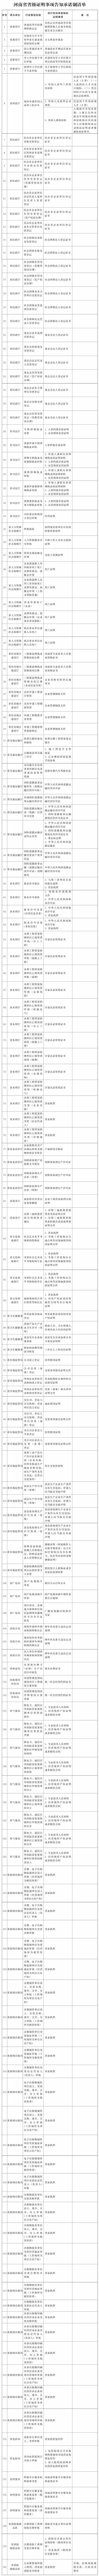 河南省人民政府办公厅关于印发河南省省级证明事项告知承诺制清单的通知